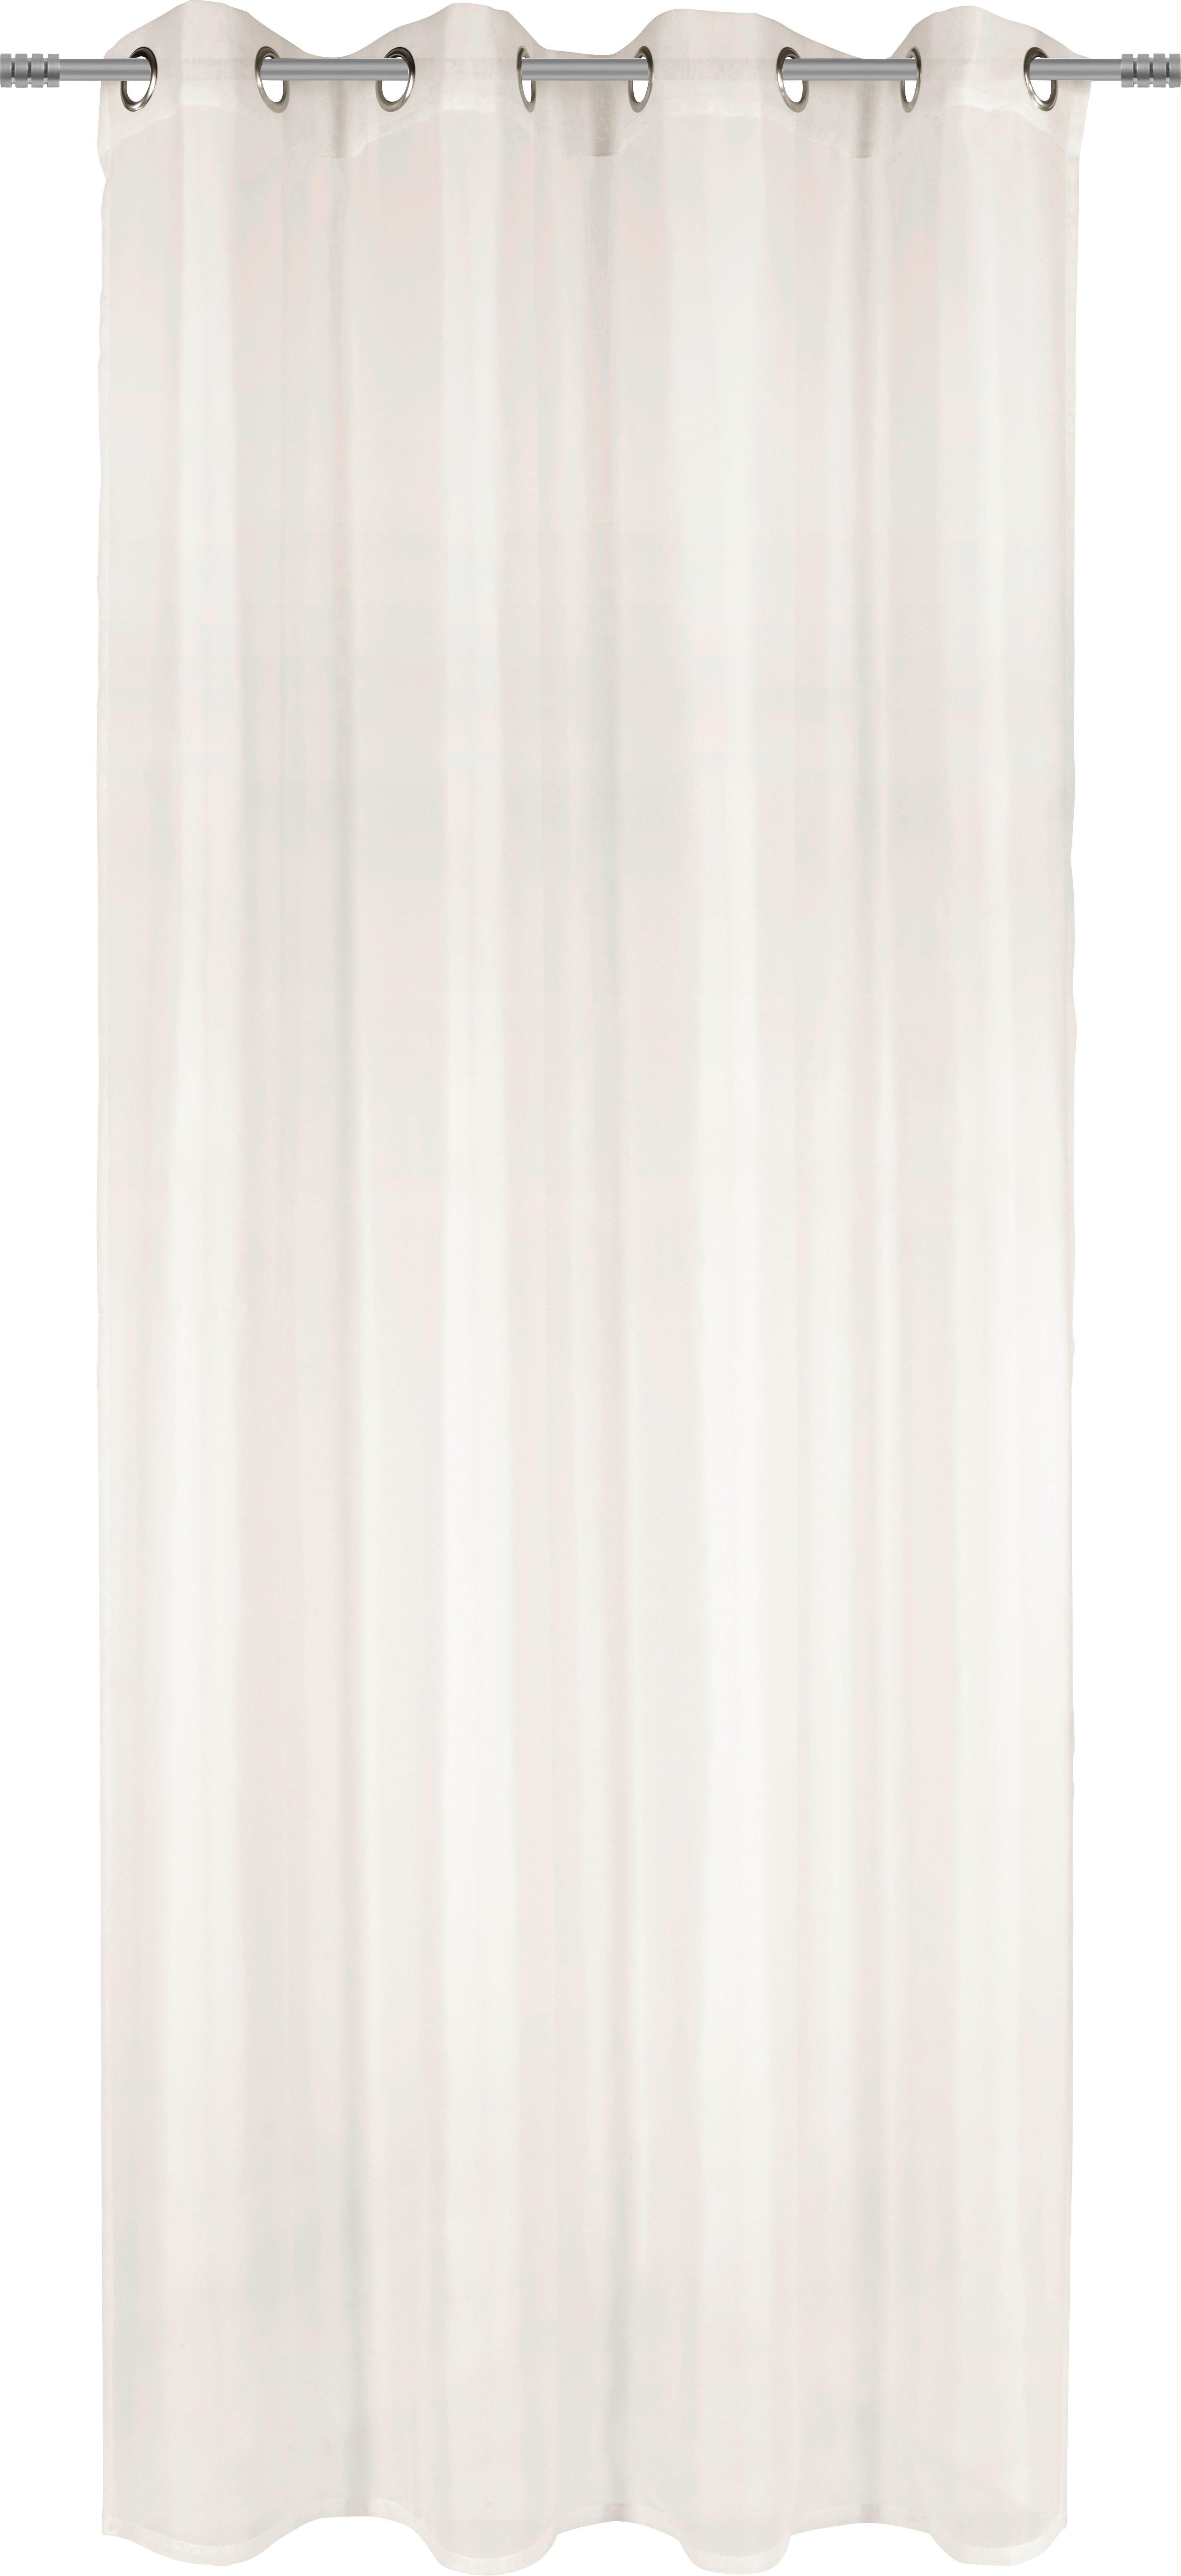 ÖSENSCHAL UNI VOILE transparent 140/245 cm   - Naturfarben, Basics, Textil (140/245cm) - Boxxx